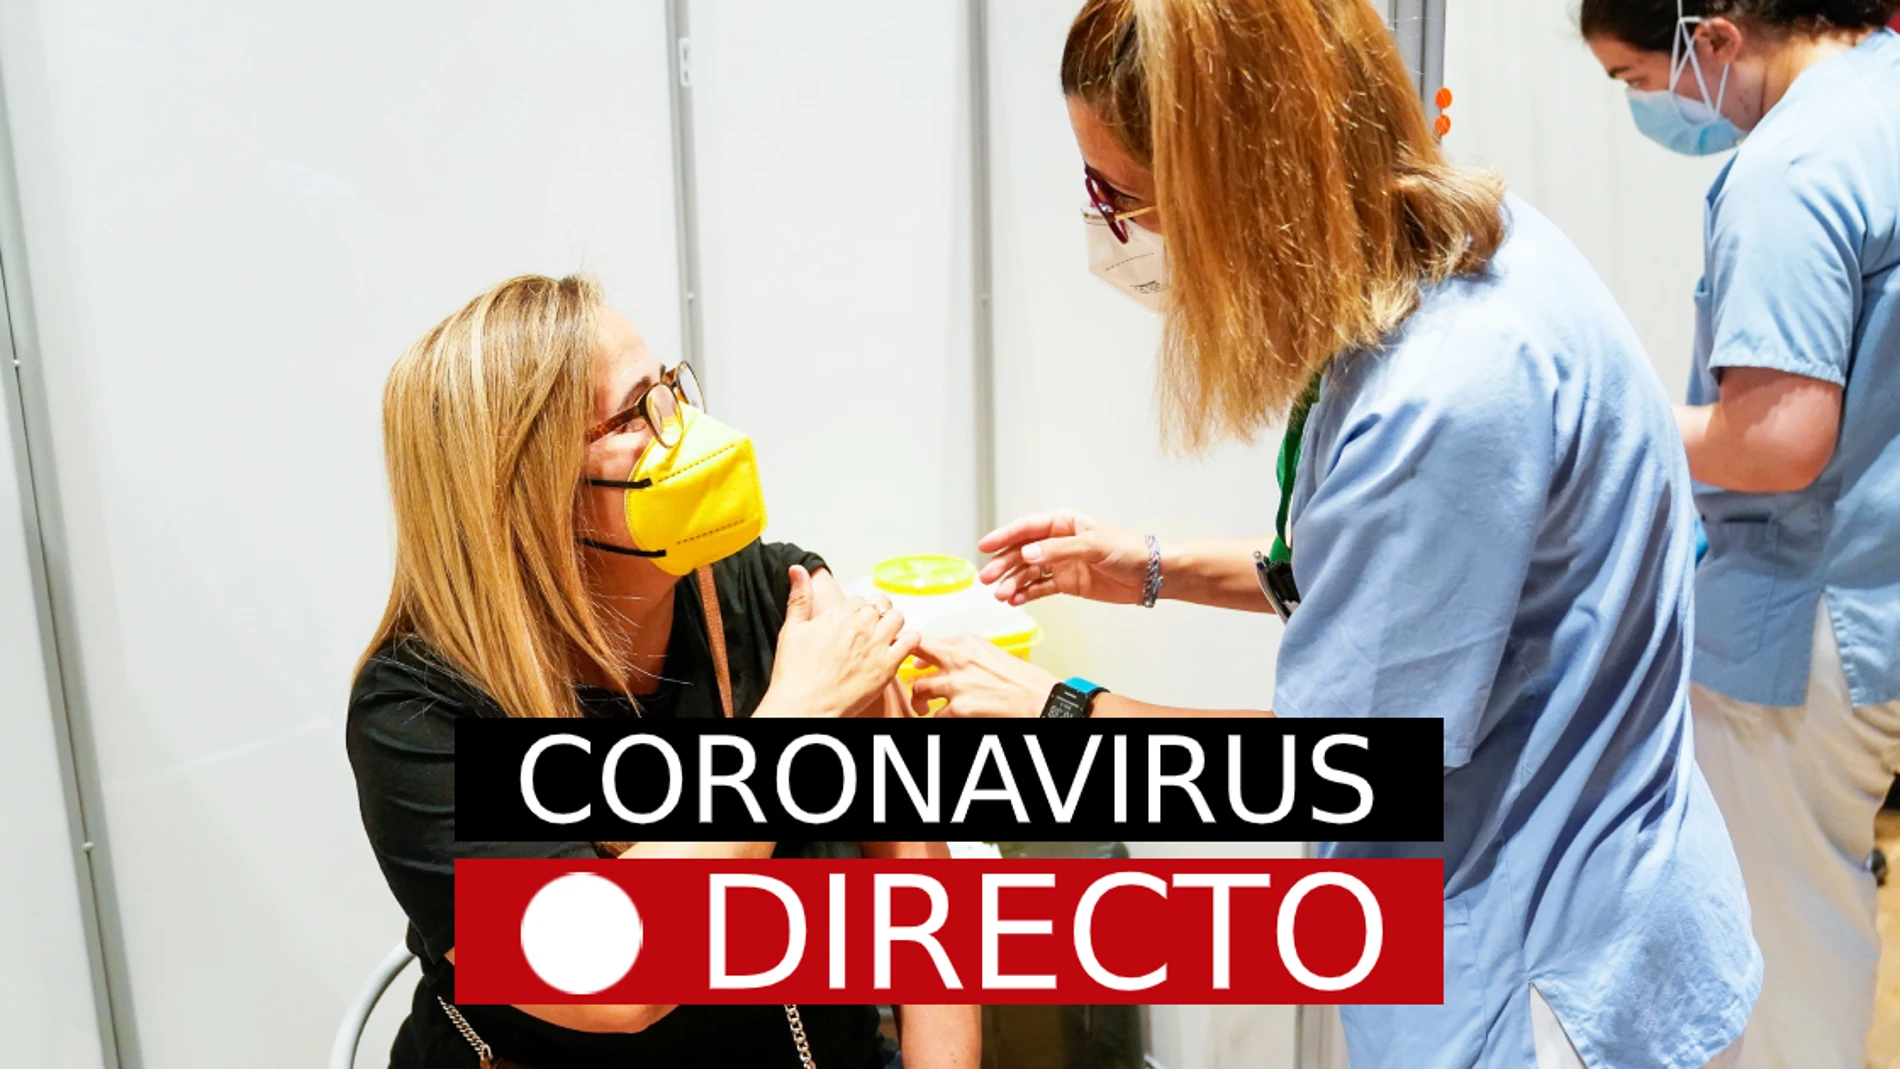 Última hora y novedades del coronavirus en España: Vacunas en el Zendal, brote de Mallorca, hoy